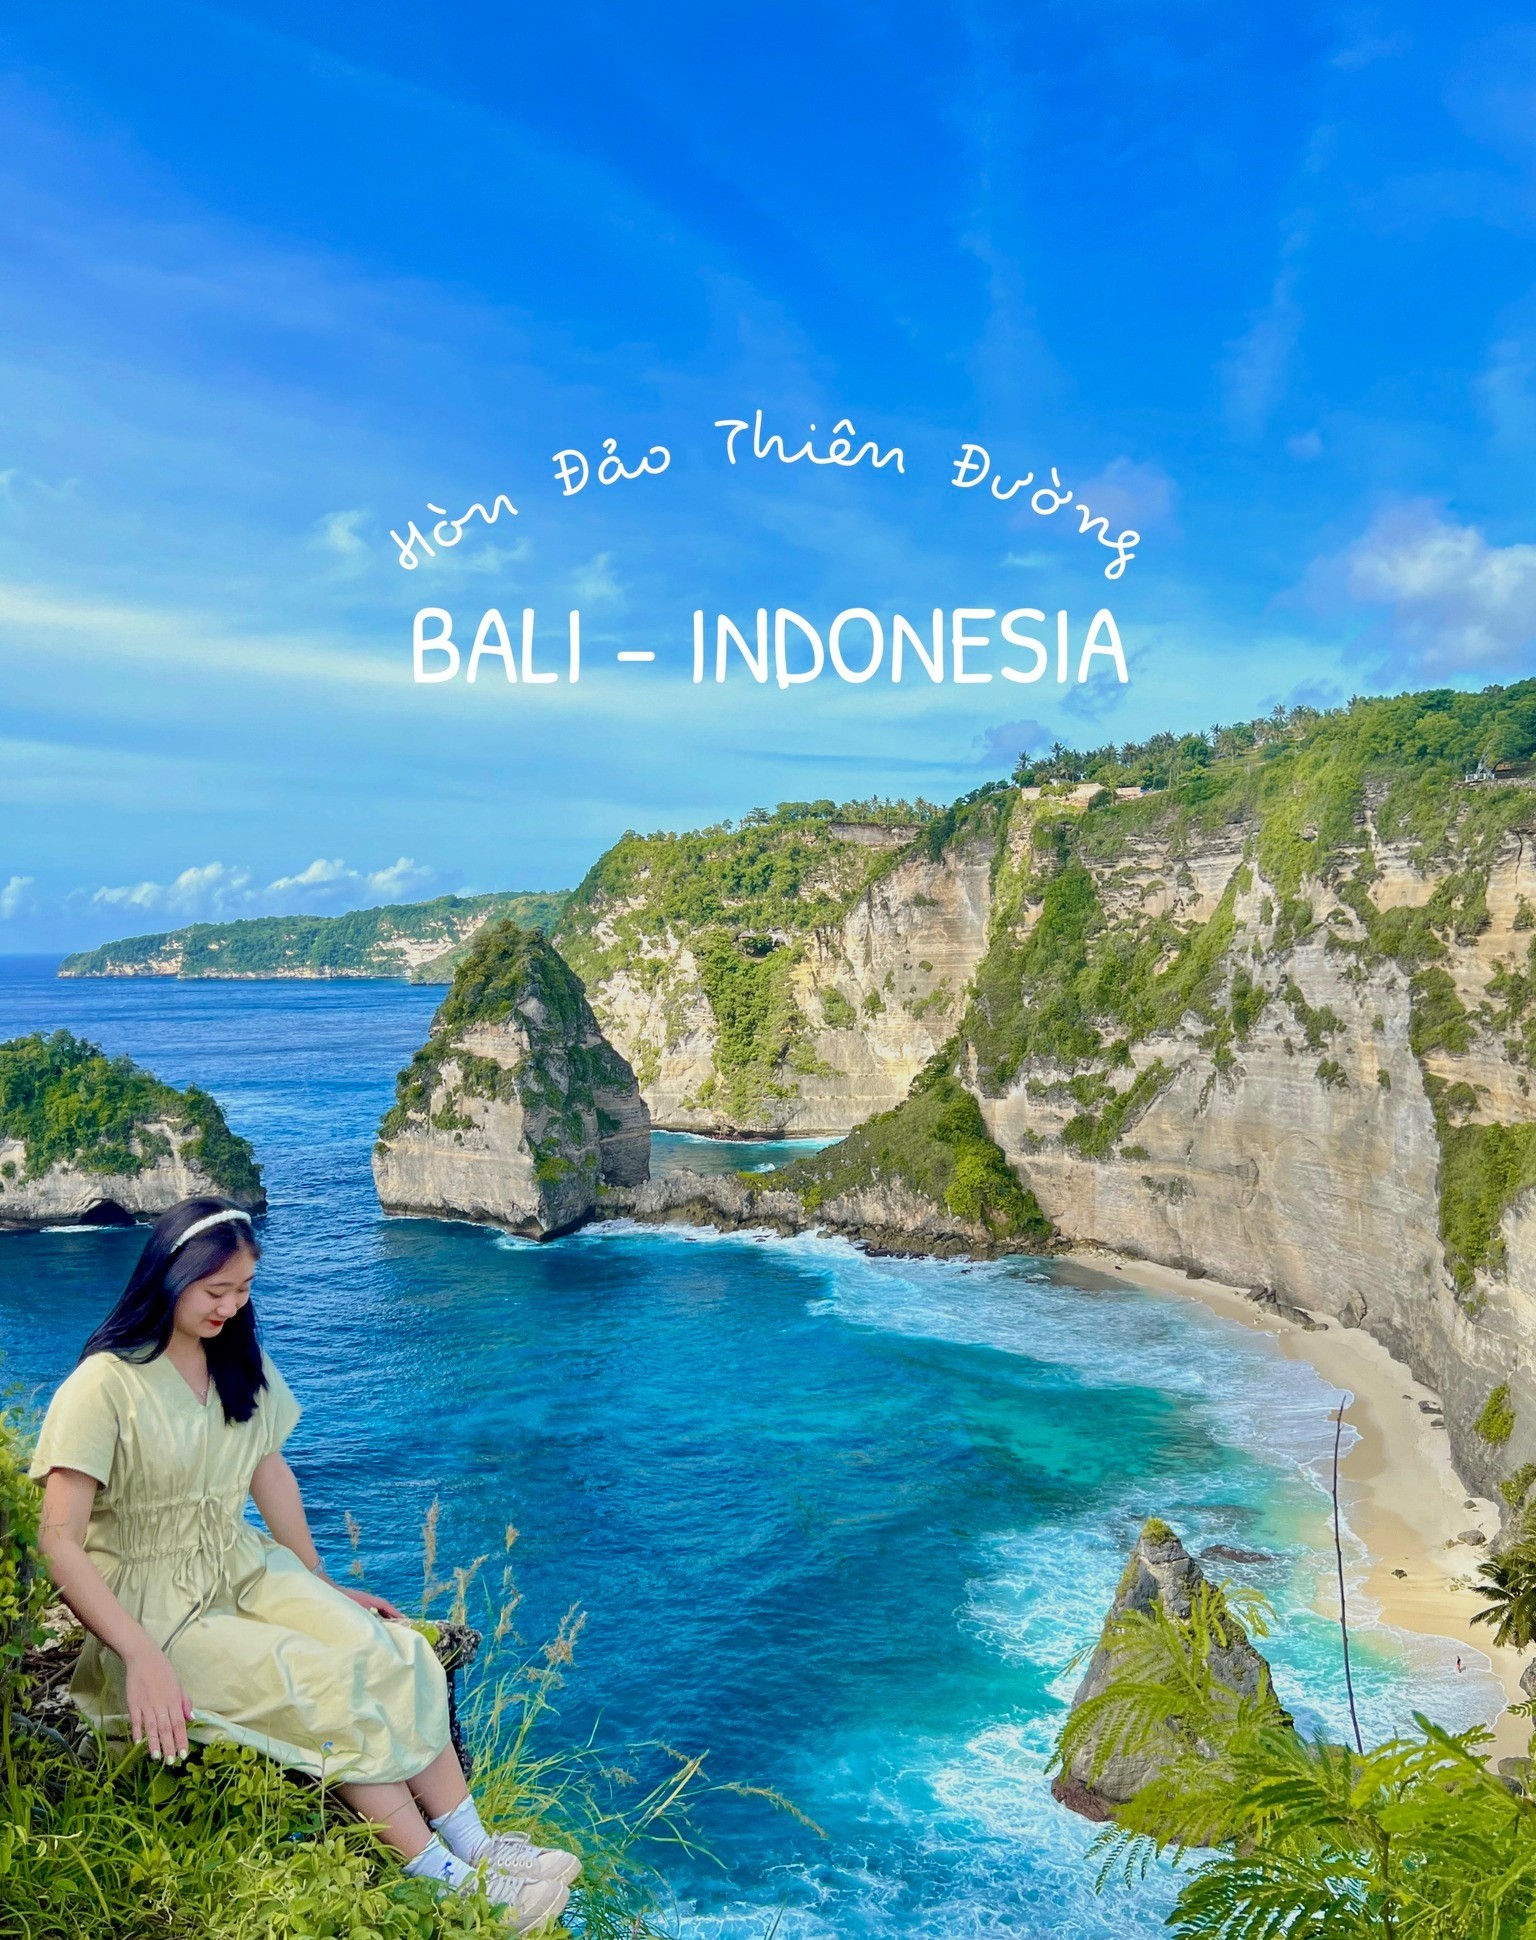 Đến Bali để đắm mình trong cảnh đẹp ở 'đảo thiên đường' - 1